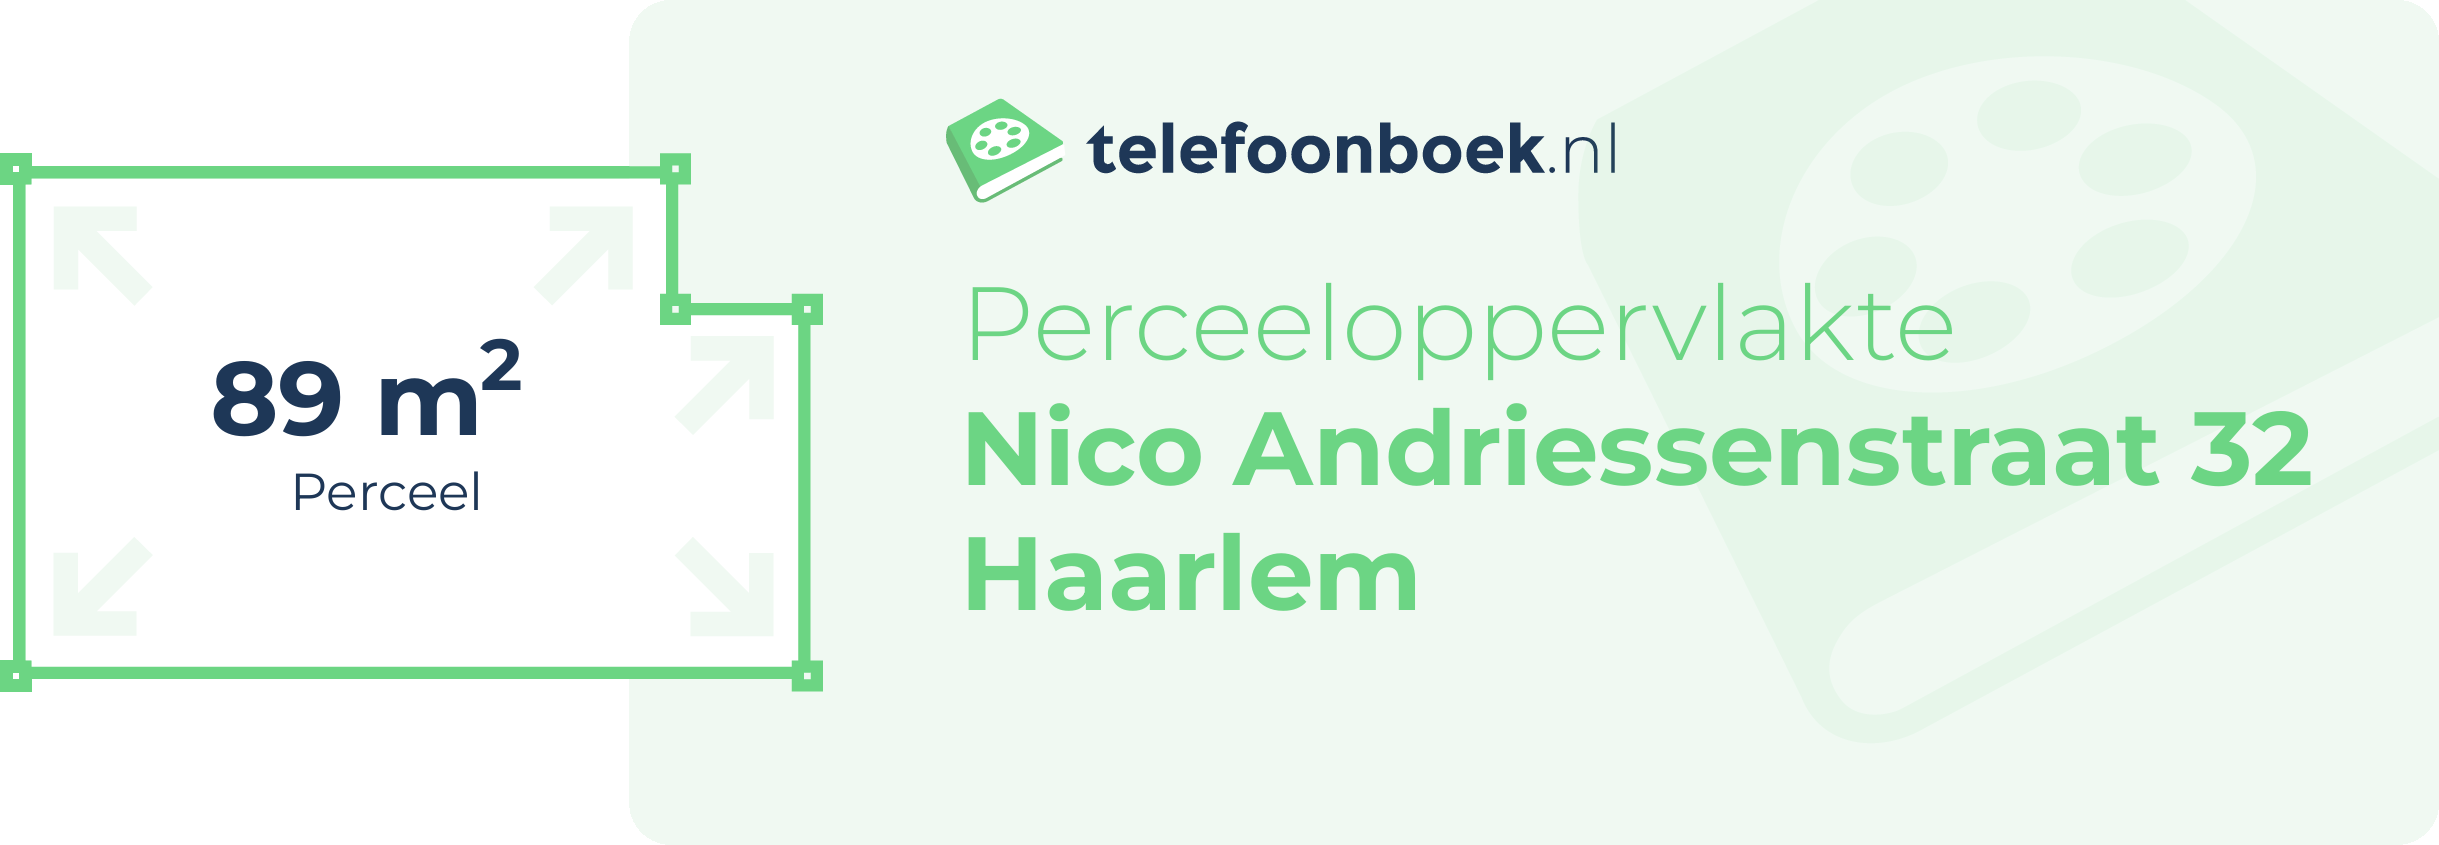 Perceeloppervlakte Nico Andriessenstraat 32 Haarlem